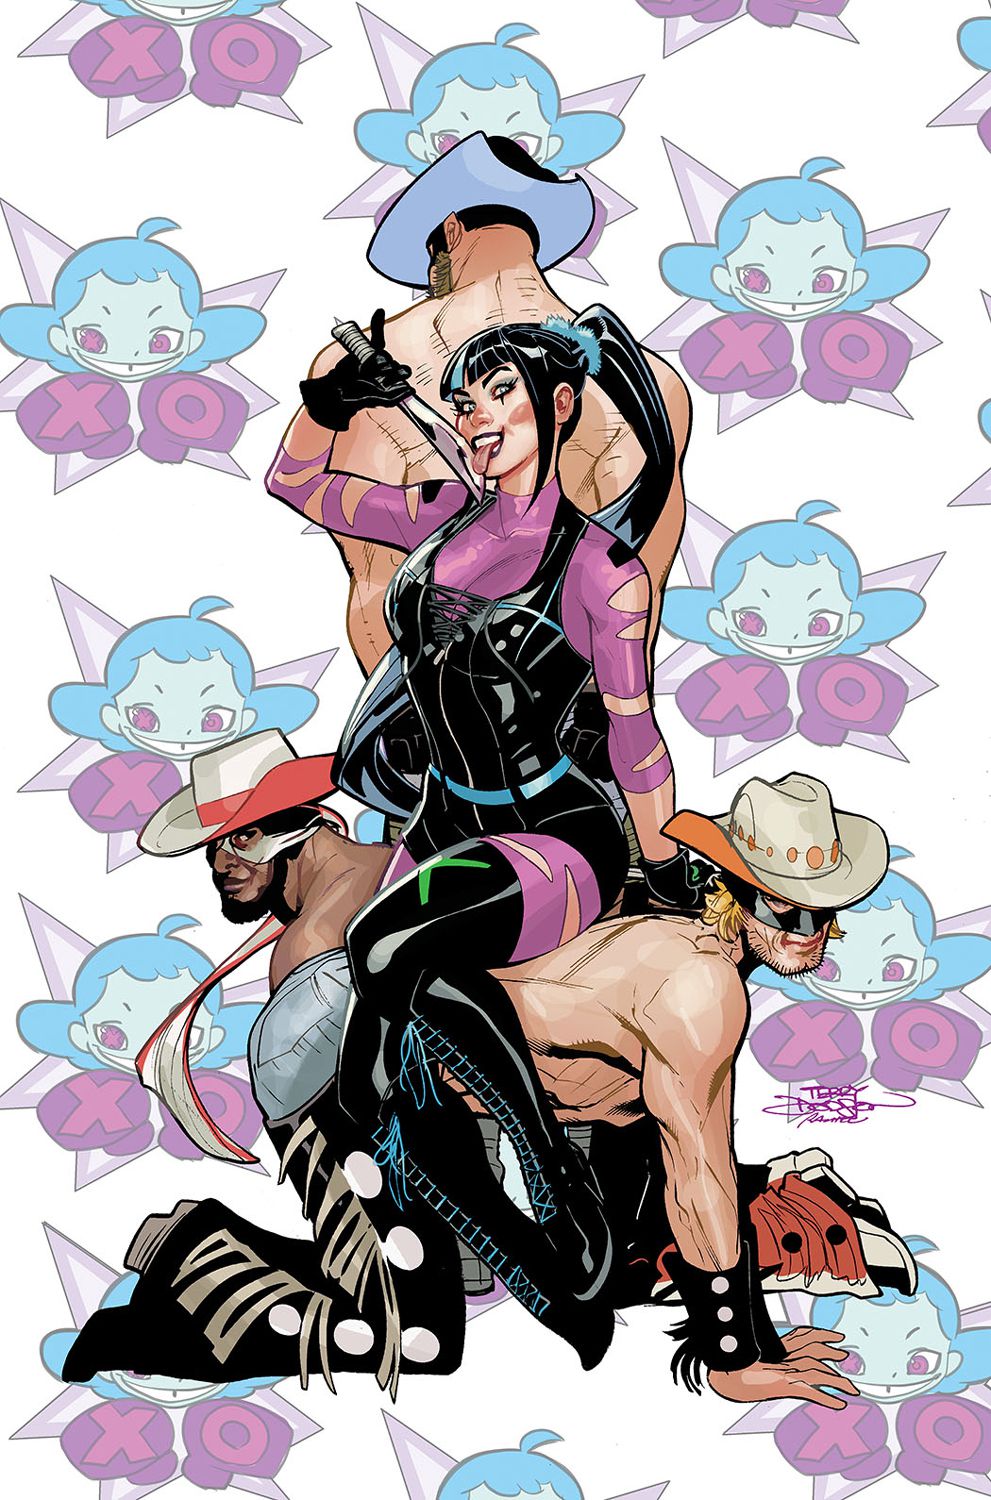 Punchline slickar villigt sin kniv och sitter kokett på ryggen av tre av Nasty Boys på omslaget till Gotham City Sirens #2.